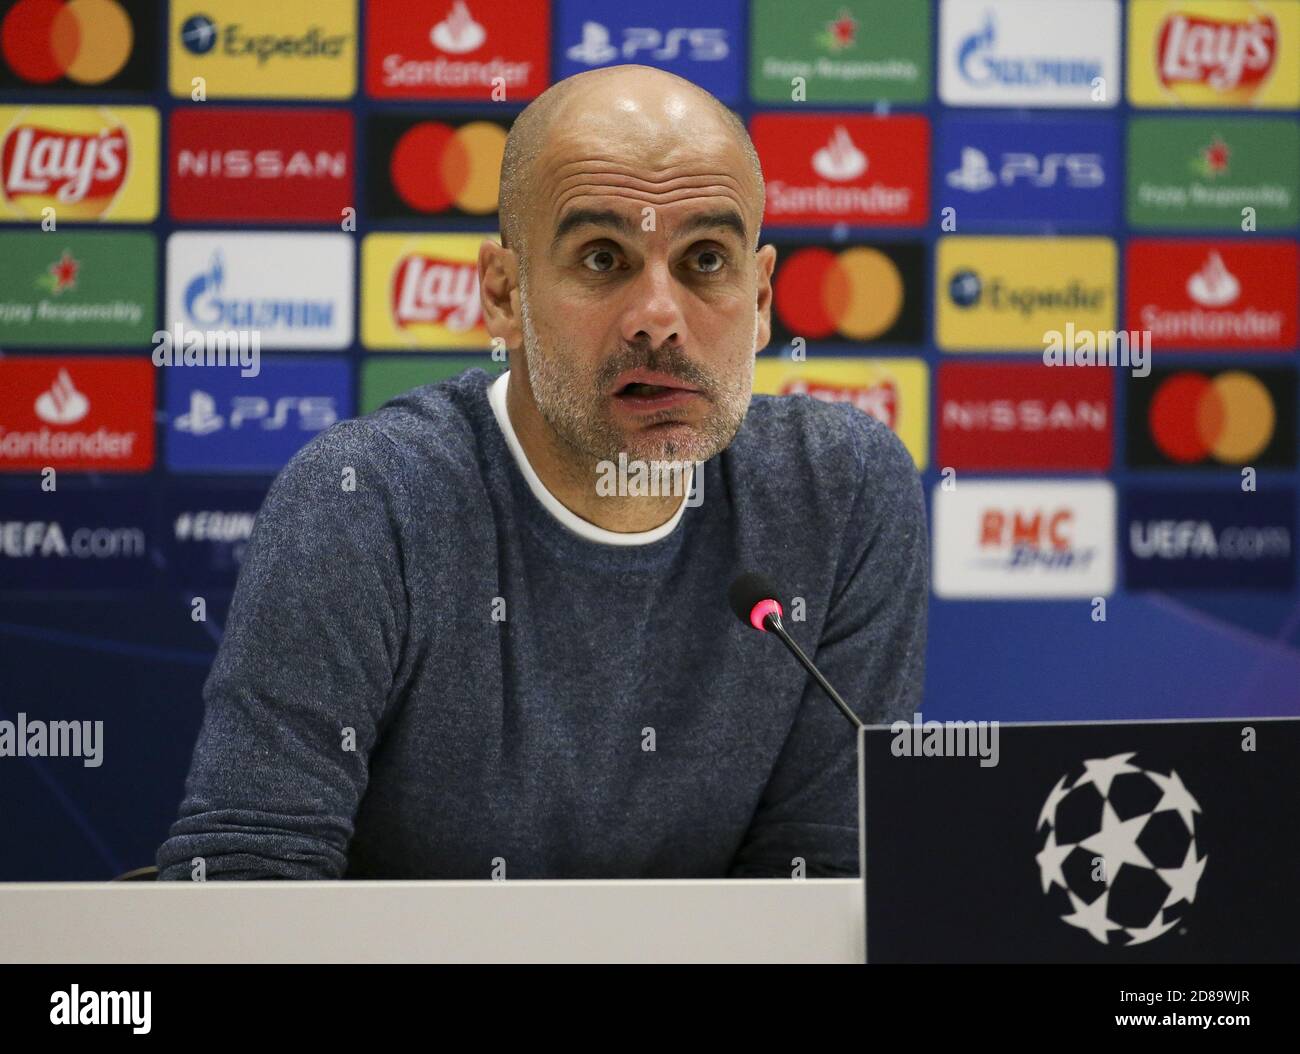 El entrenador del Manchester City Pep Guardiola responde a los medios de comunicación durante la rueda de prensa posterior al partido después de la Liga de Campeones de la UEFA, Group Stage, C Foto de stock